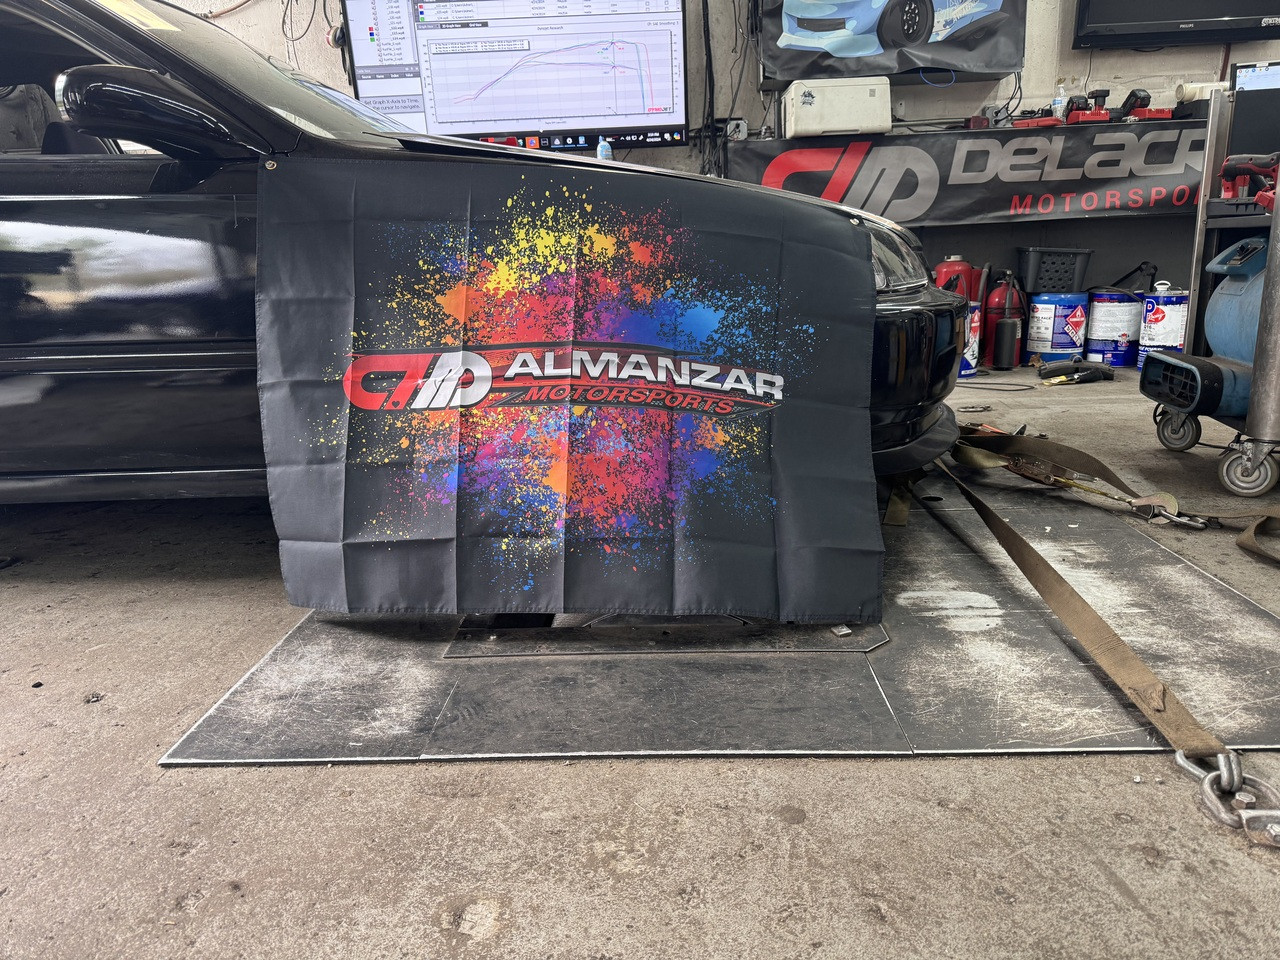 Almanzar Motorsports Tire covers